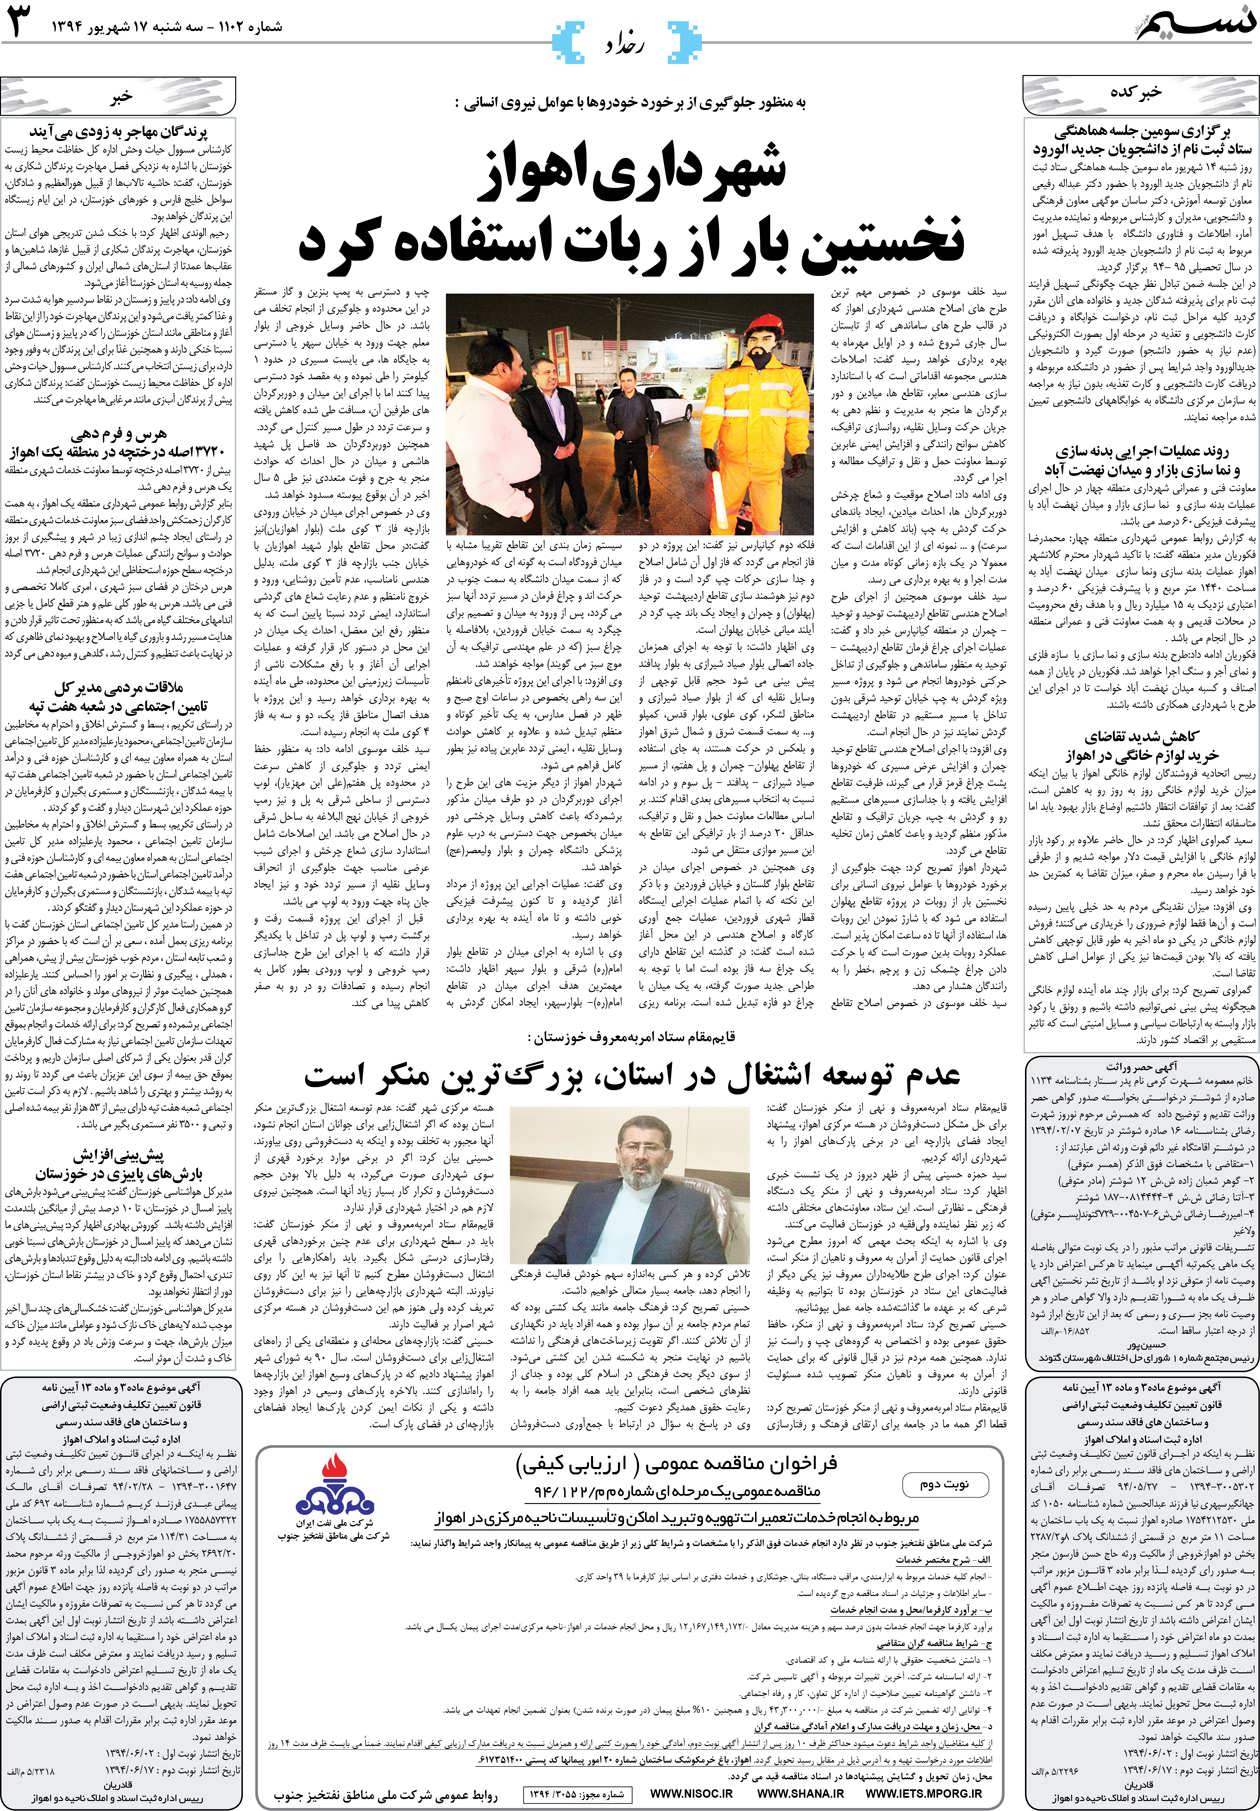 صفحه رخداد روزنامه نسیم شماره 1102